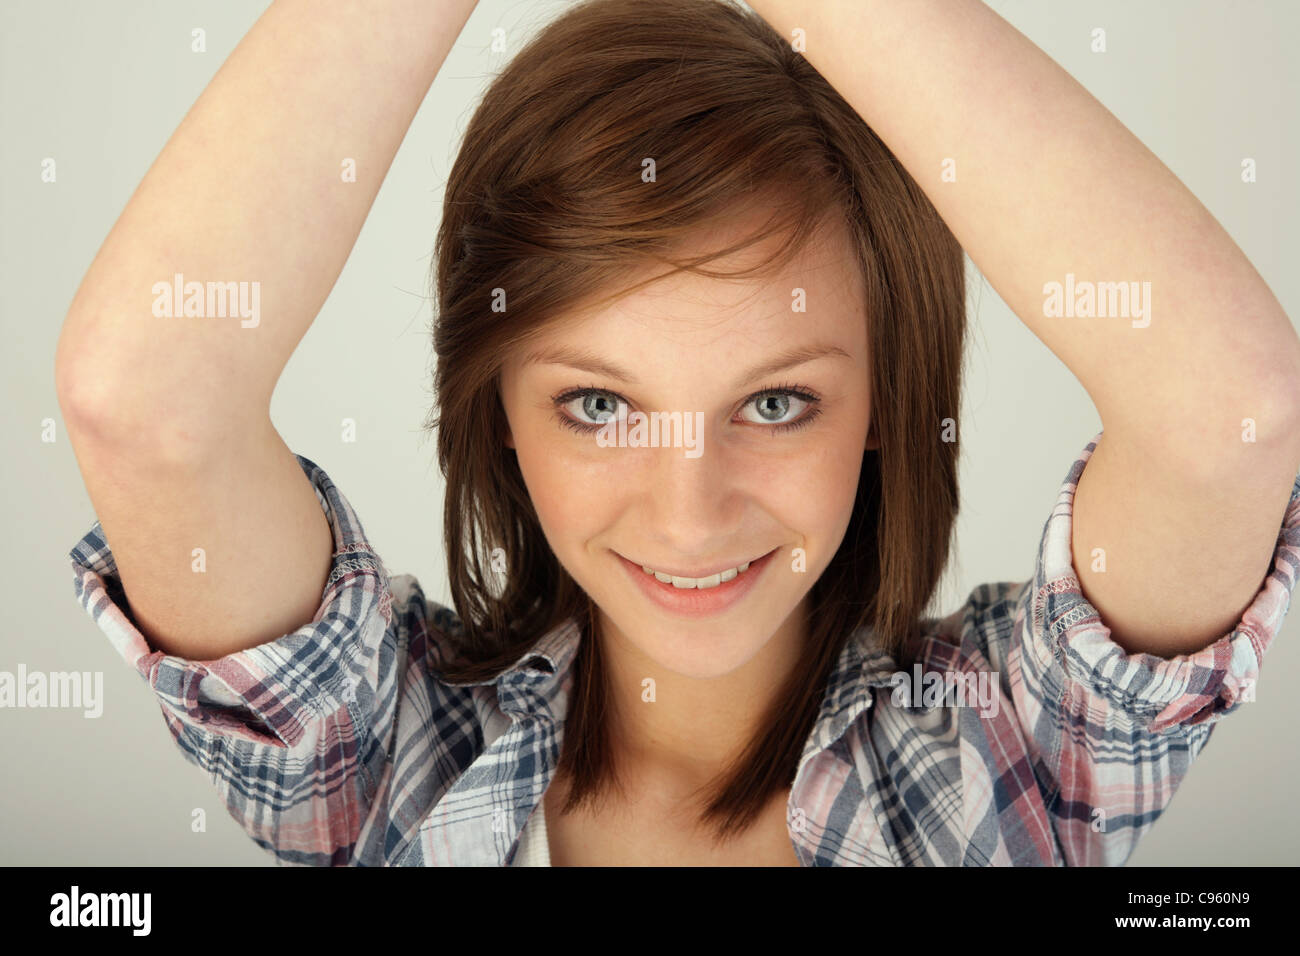 Adolescente avec ses bras levés au-dessus de sa tête. Banque D'Images